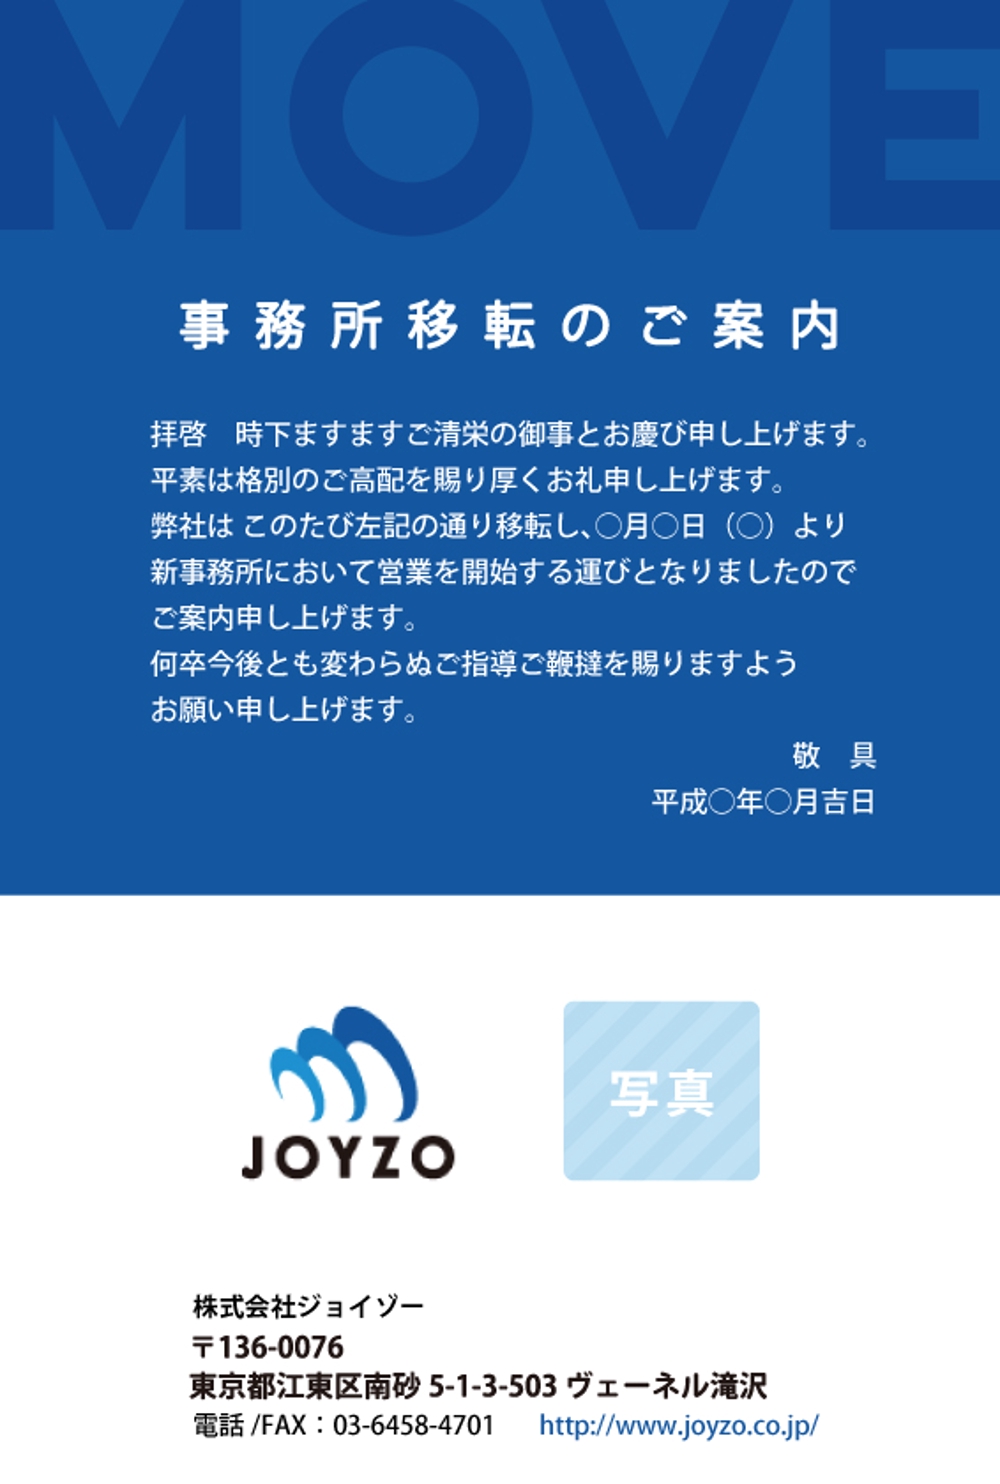 joyzo_a.jpg